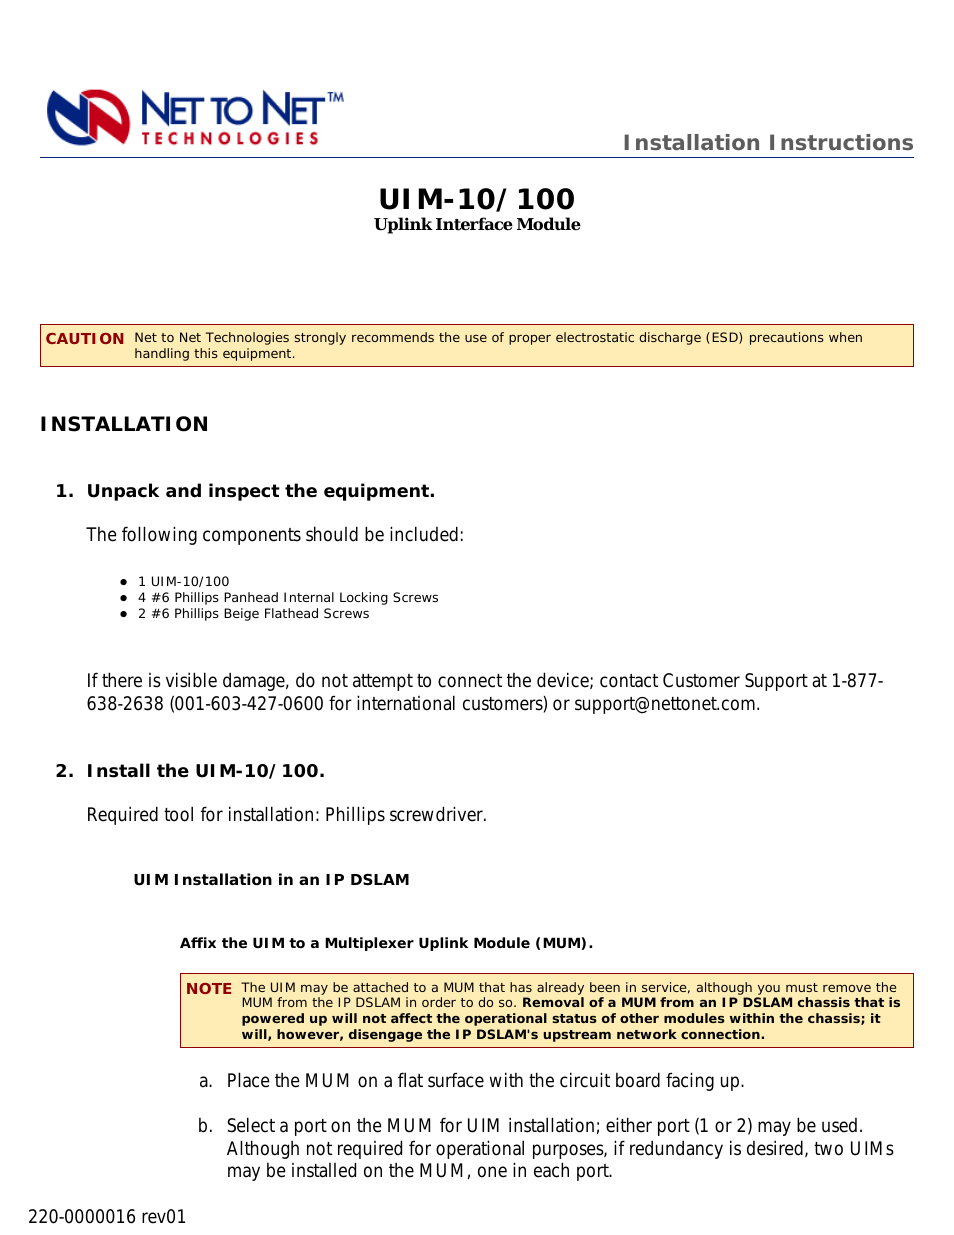 Uplink Interface Module UIM-10/100